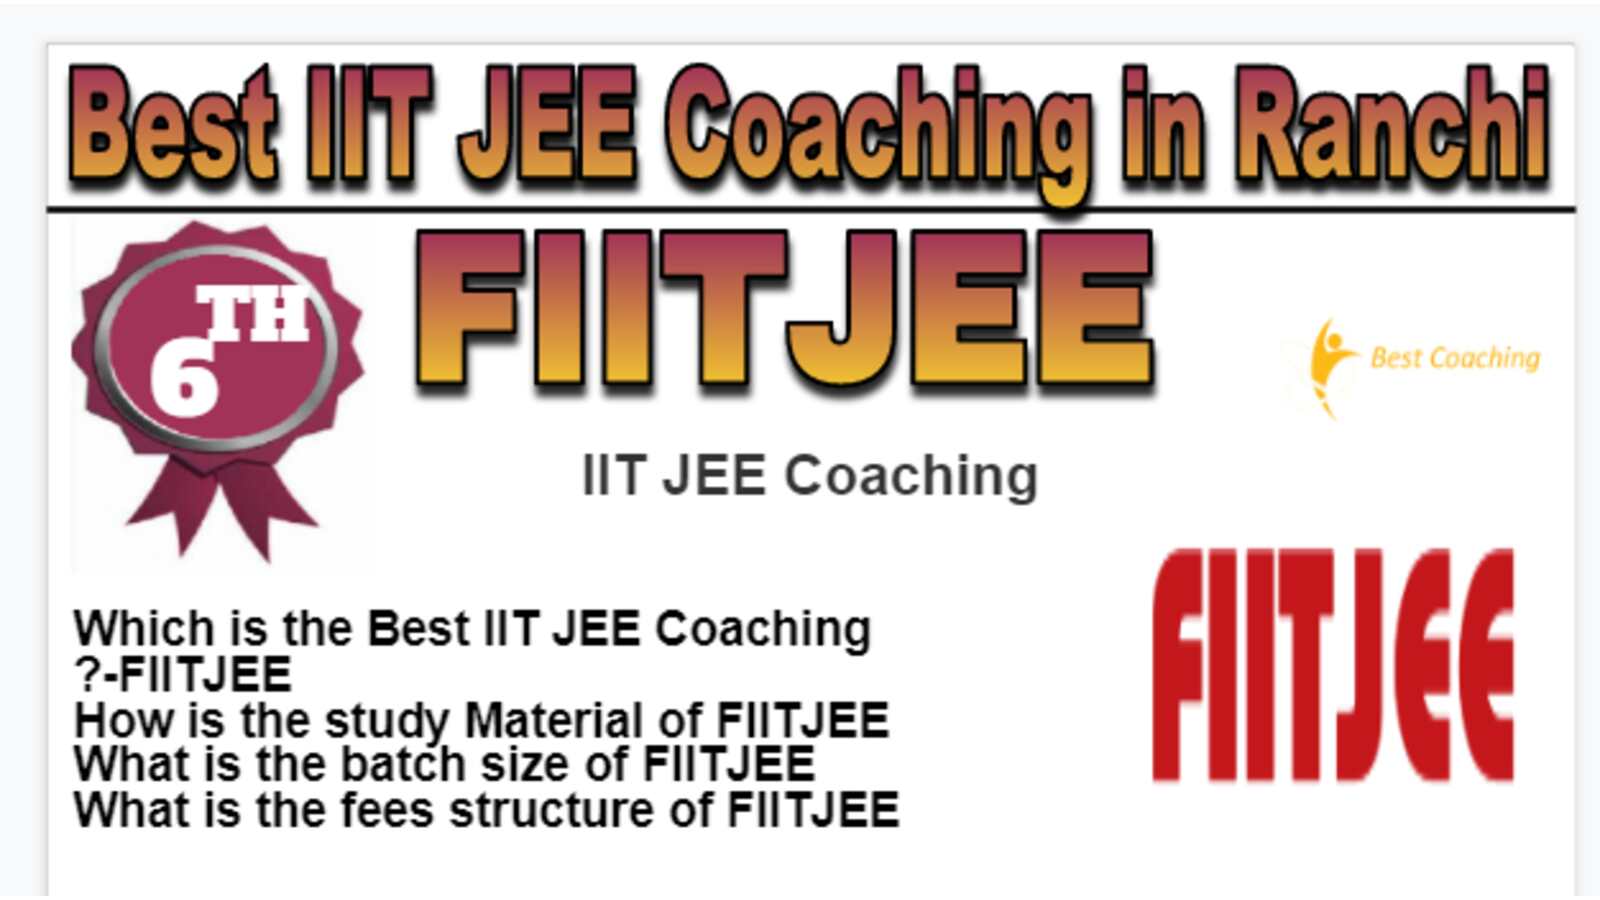 Rank 6 Best IIT JEE Coaching in Ranchi